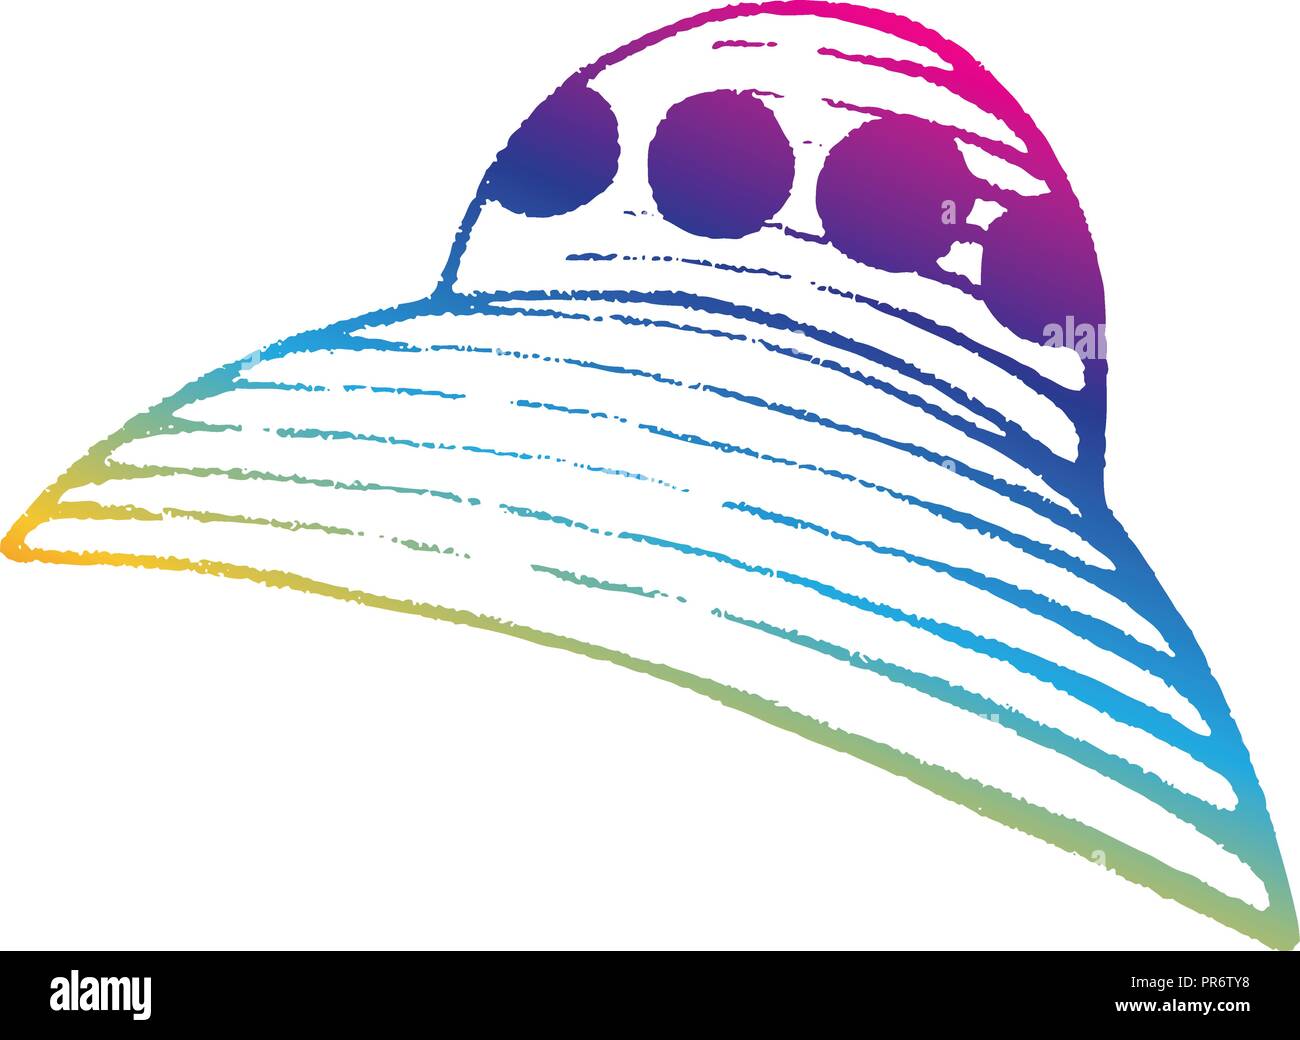 Illustrazione di color arcobaleno vettorializzare schizzo di inchiostro della nave aliena isolata su uno sfondo bianco Illustrazione Vettoriale